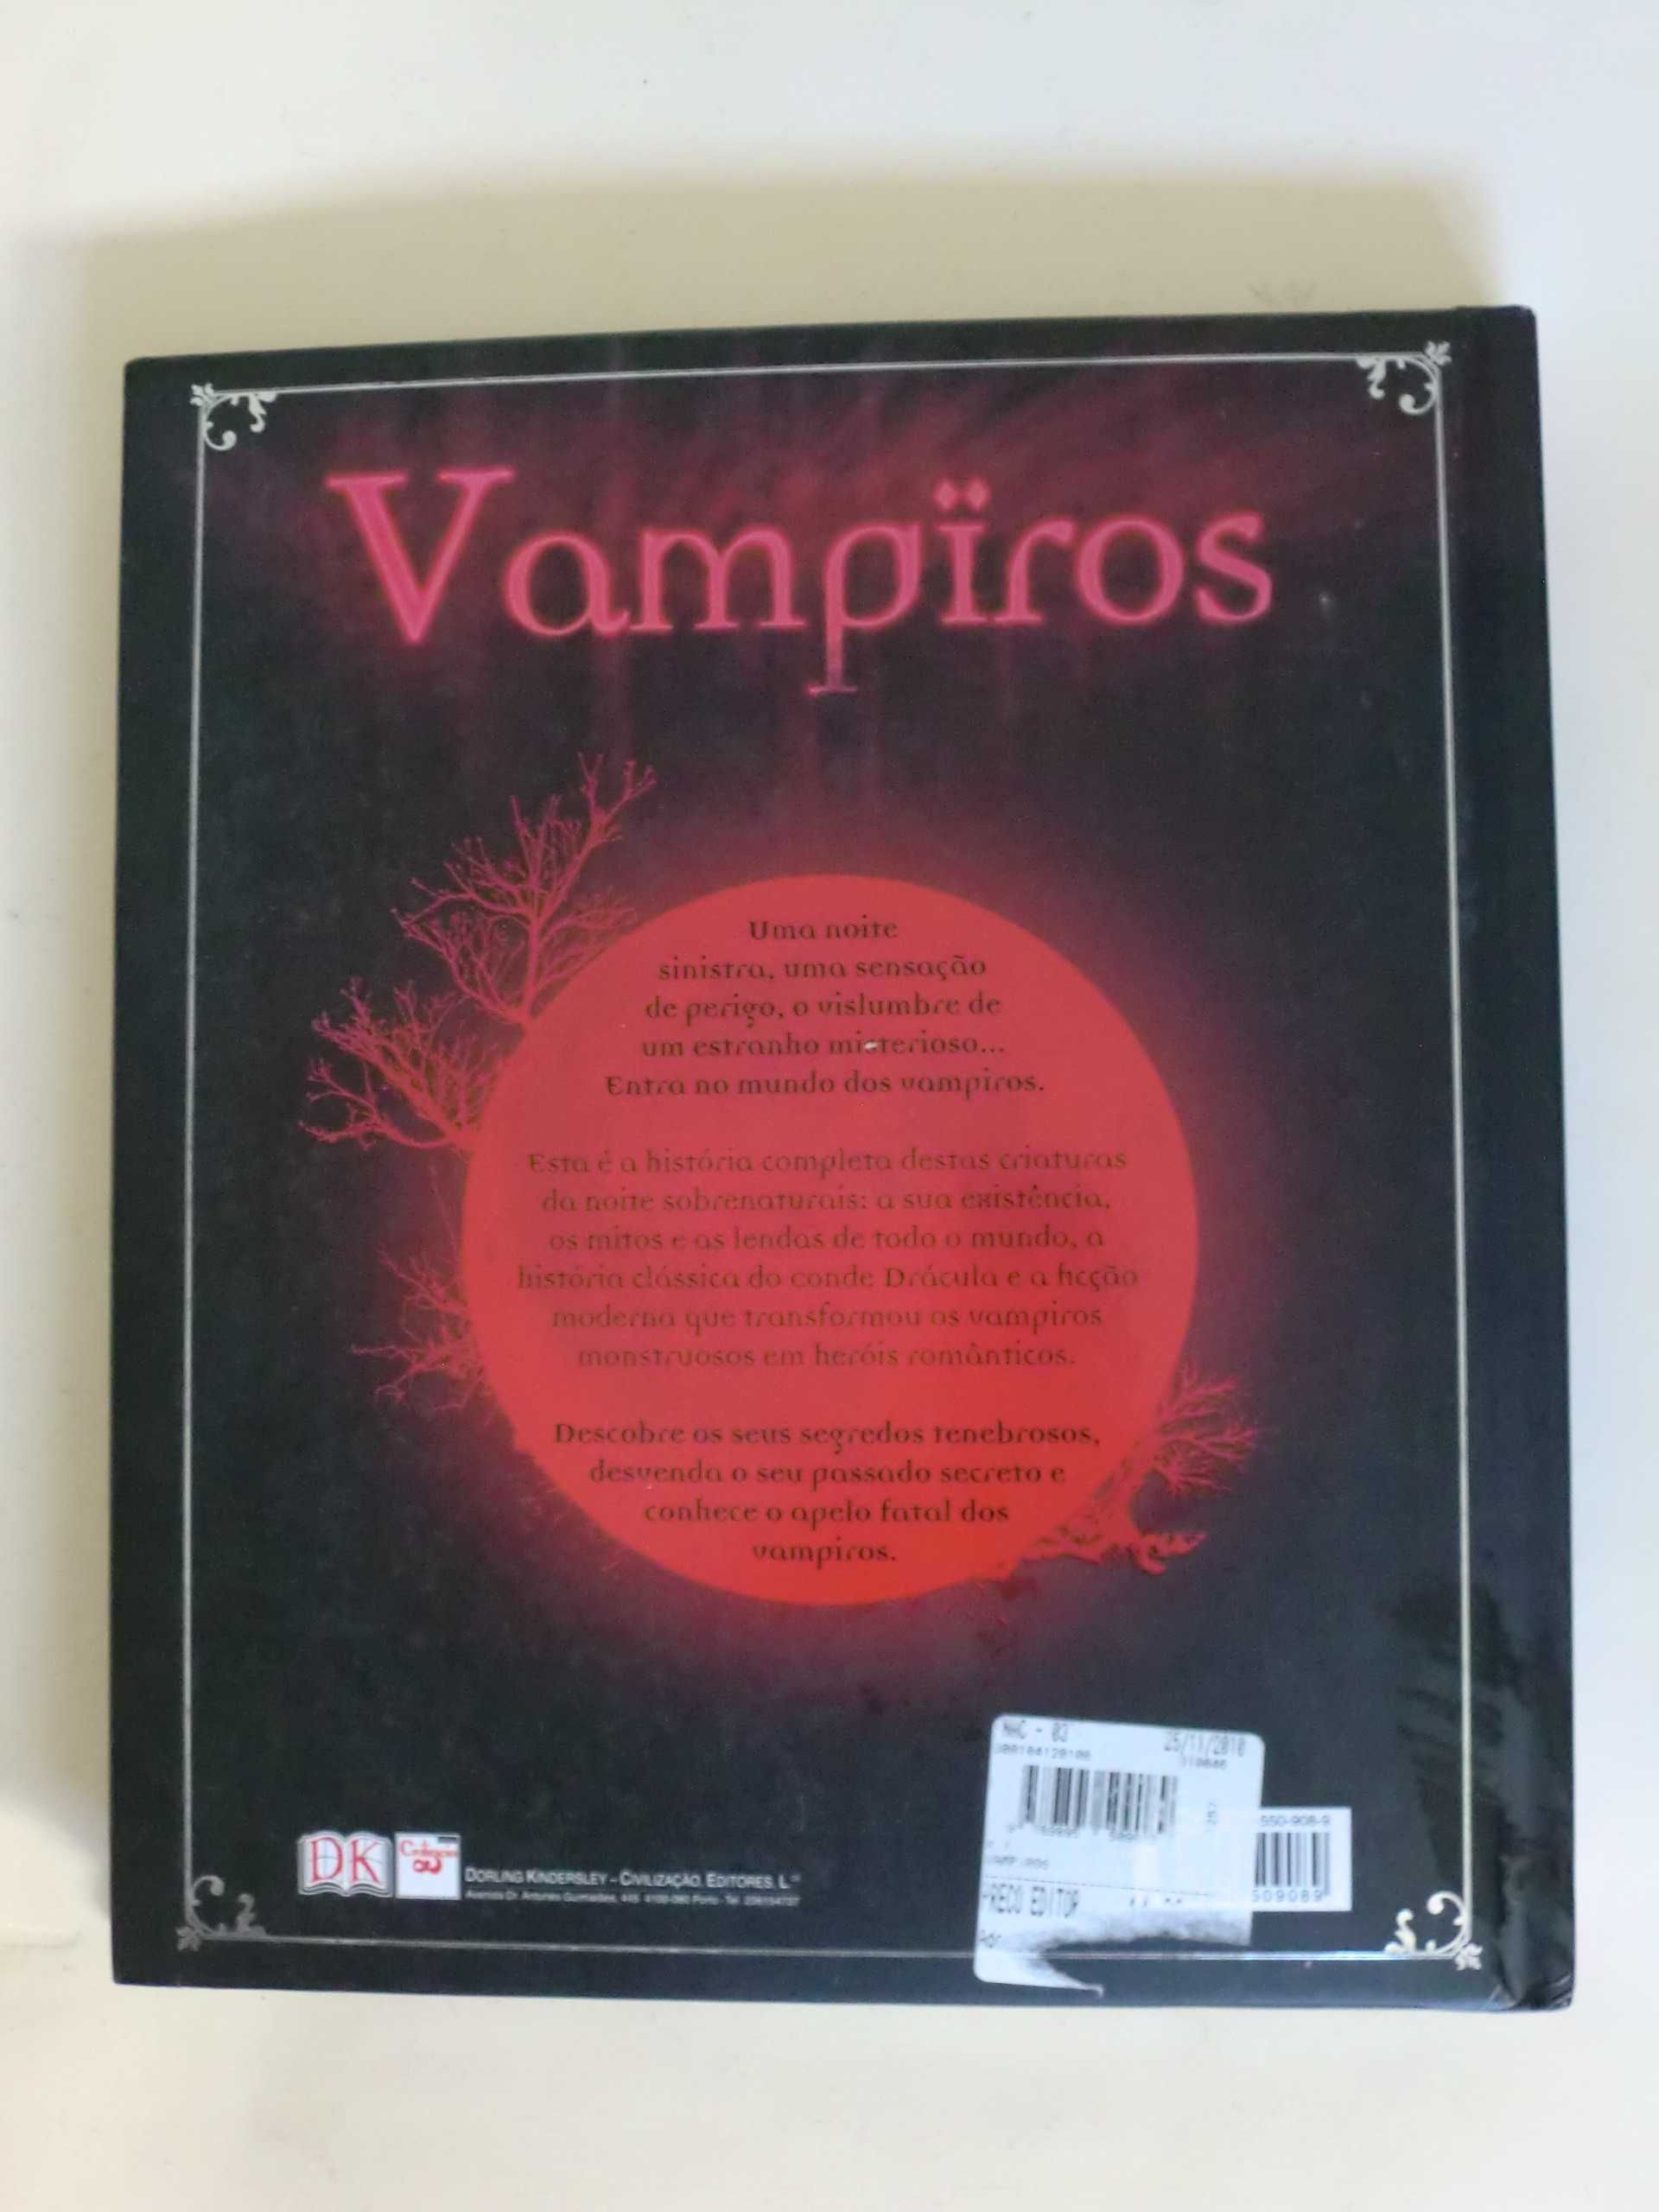 Vampiros
as lendas, a sabedoria, o fascínio - DK